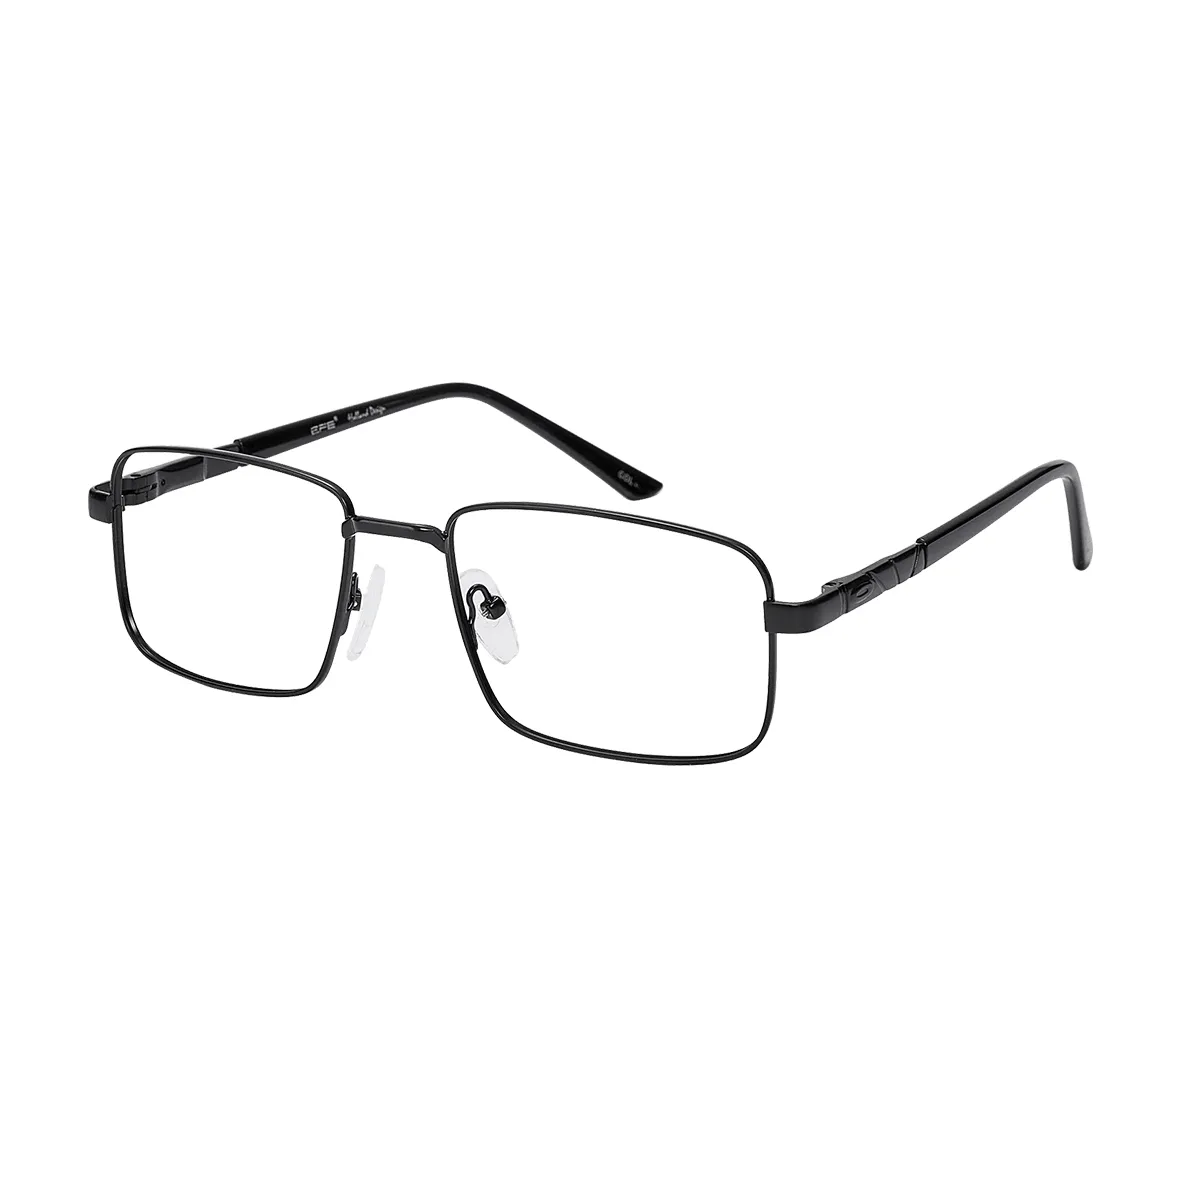 Bliss - Rectangle Black Glasses for Men